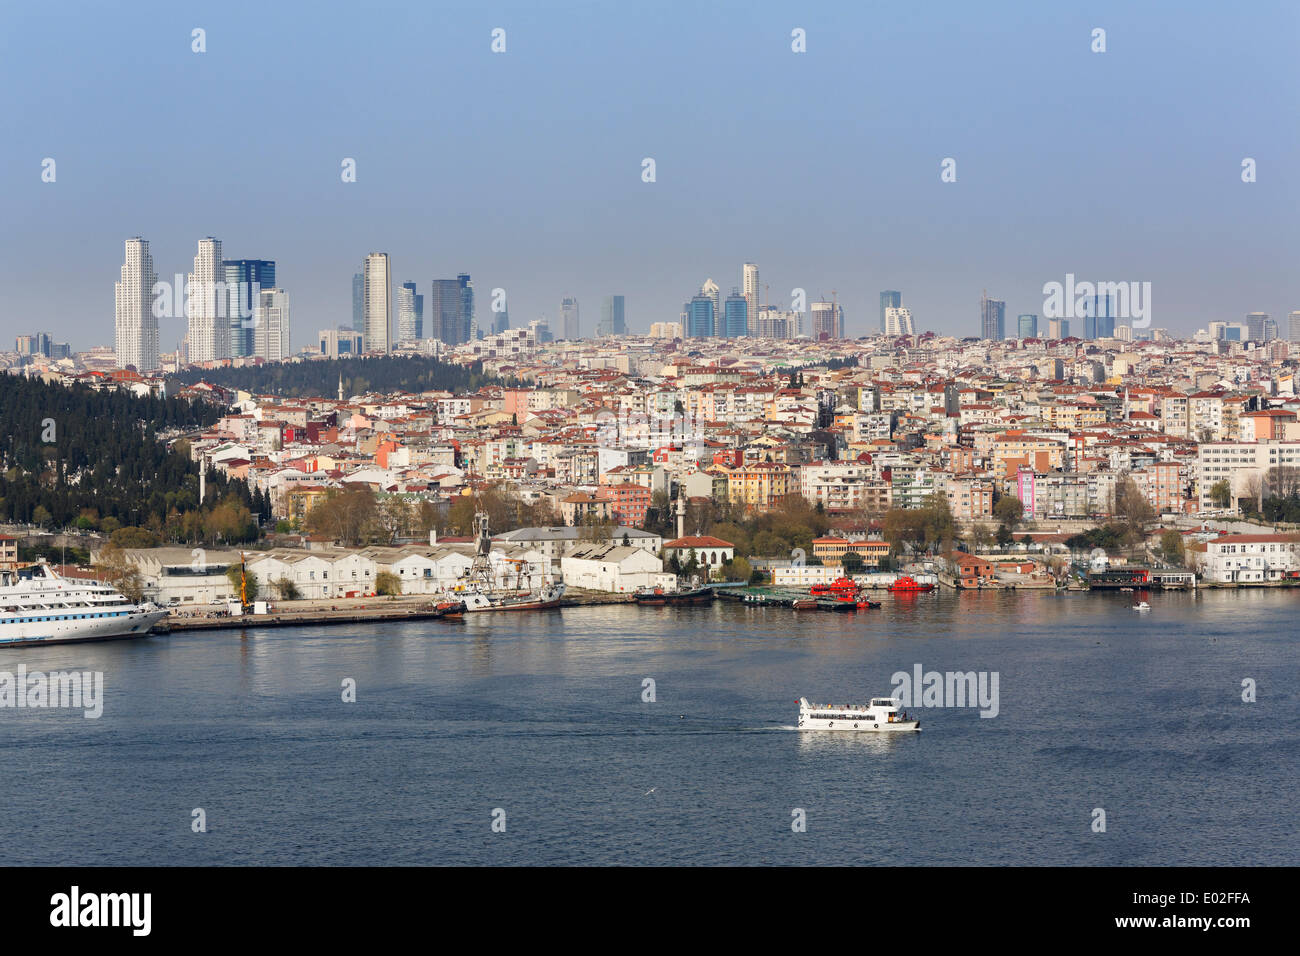 La corne d'or avec les quartiers de Beyoglu et Sisli, Istanbul, quartier de Fener, côté européen, Turquie Banque D'Images